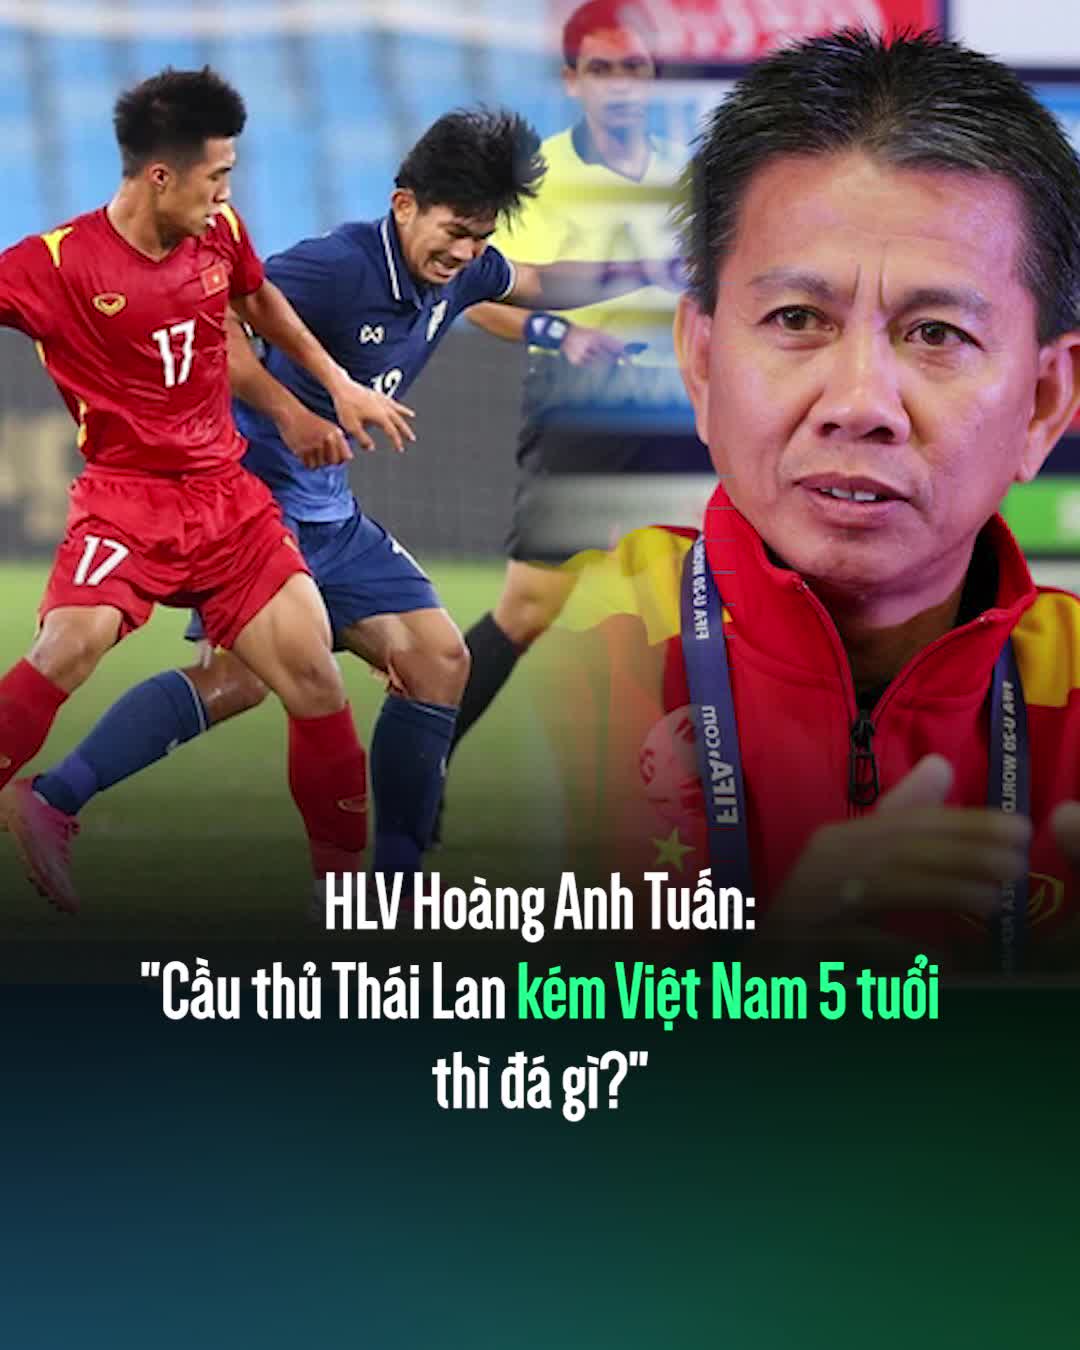 HLV Hoàng Anh Tuấn: "Cầu thủ Thái Lan kém Việt Nam 5 tuổi thì đá gì?"